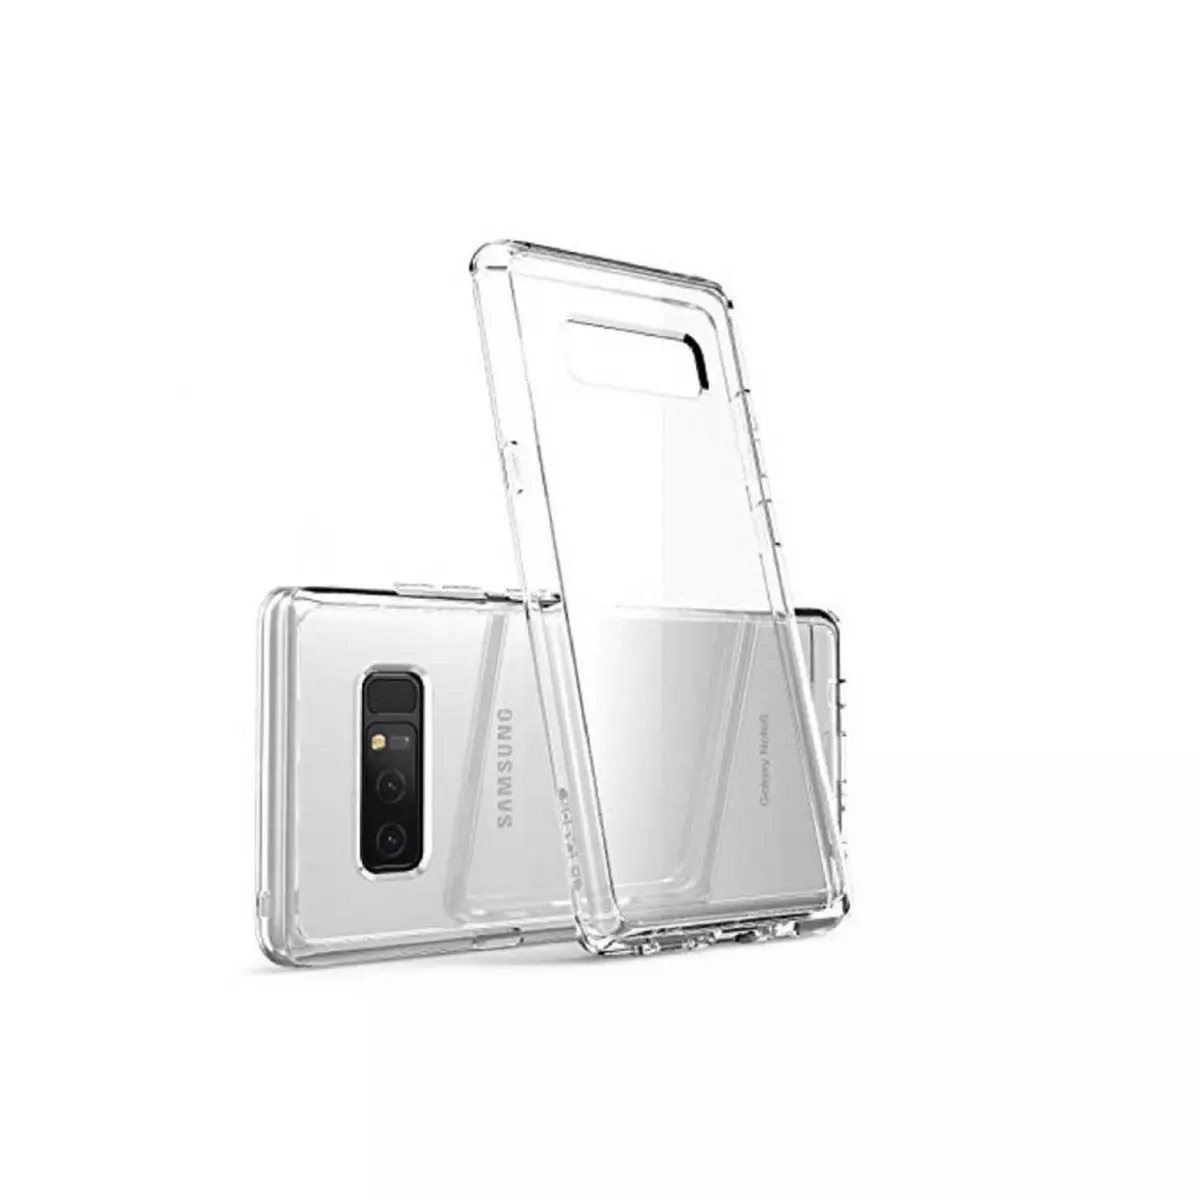 amahousse Coque Galaxy Note 8 souple transparente et ultra-fine